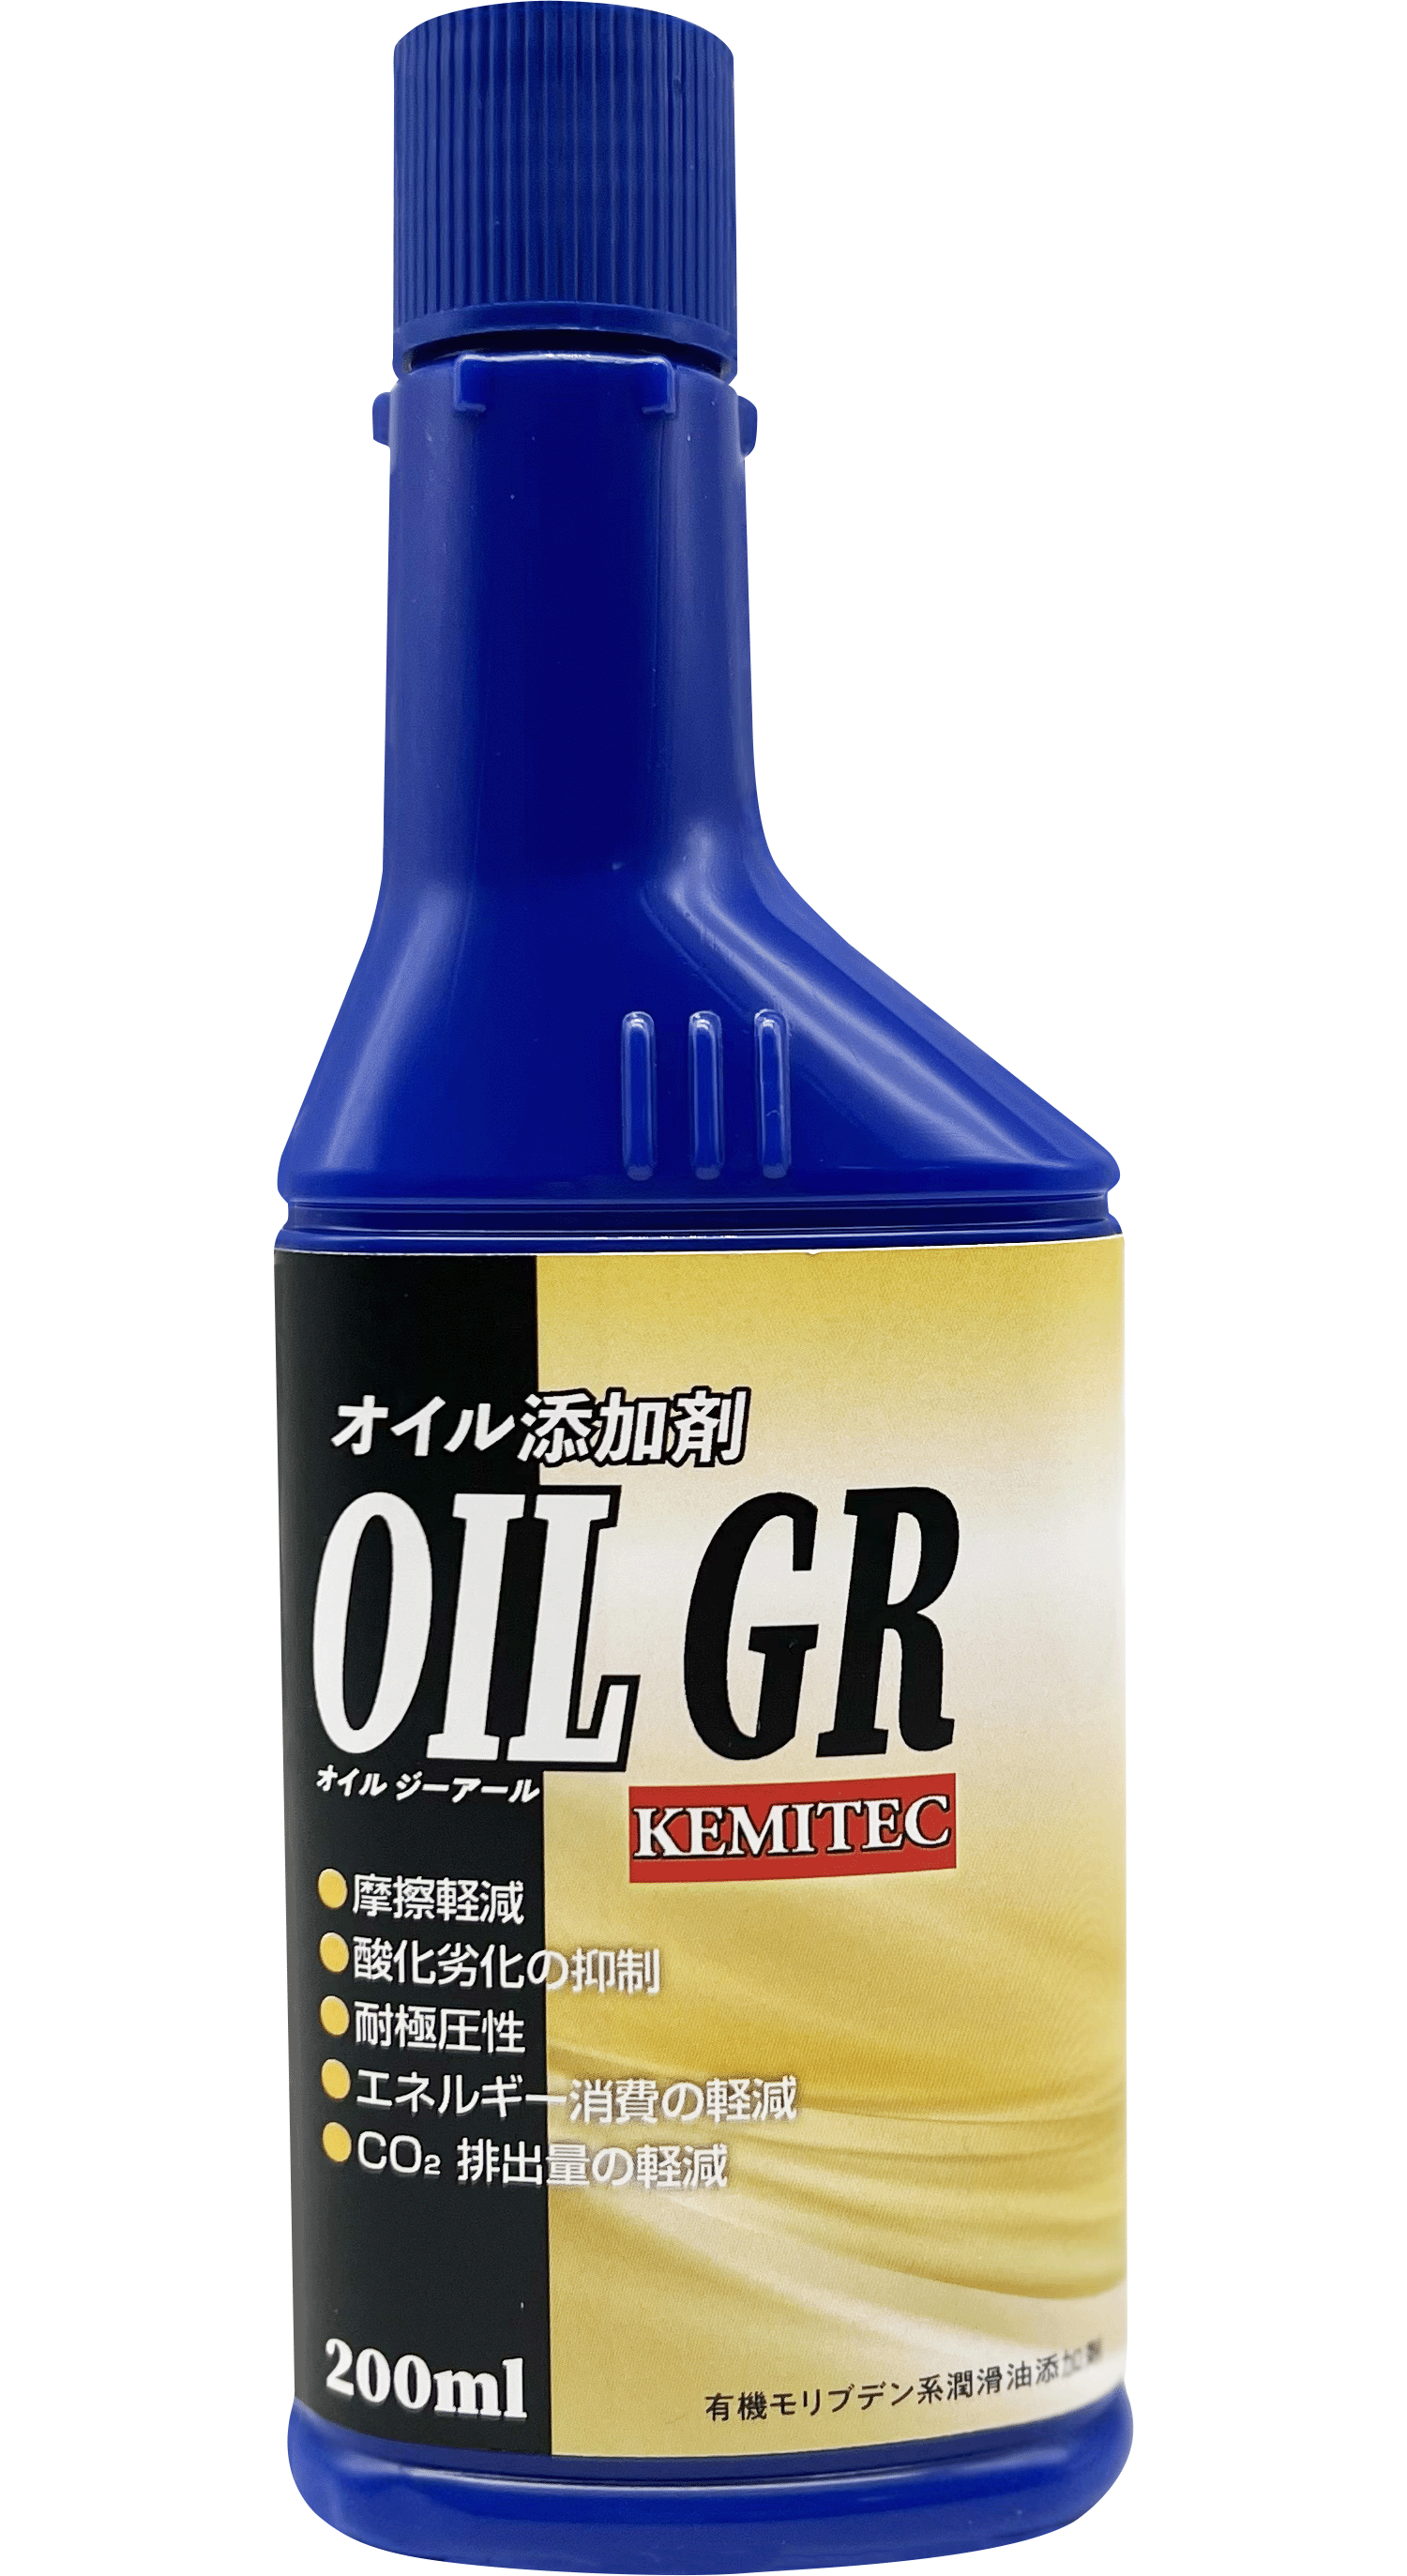 OIL GR